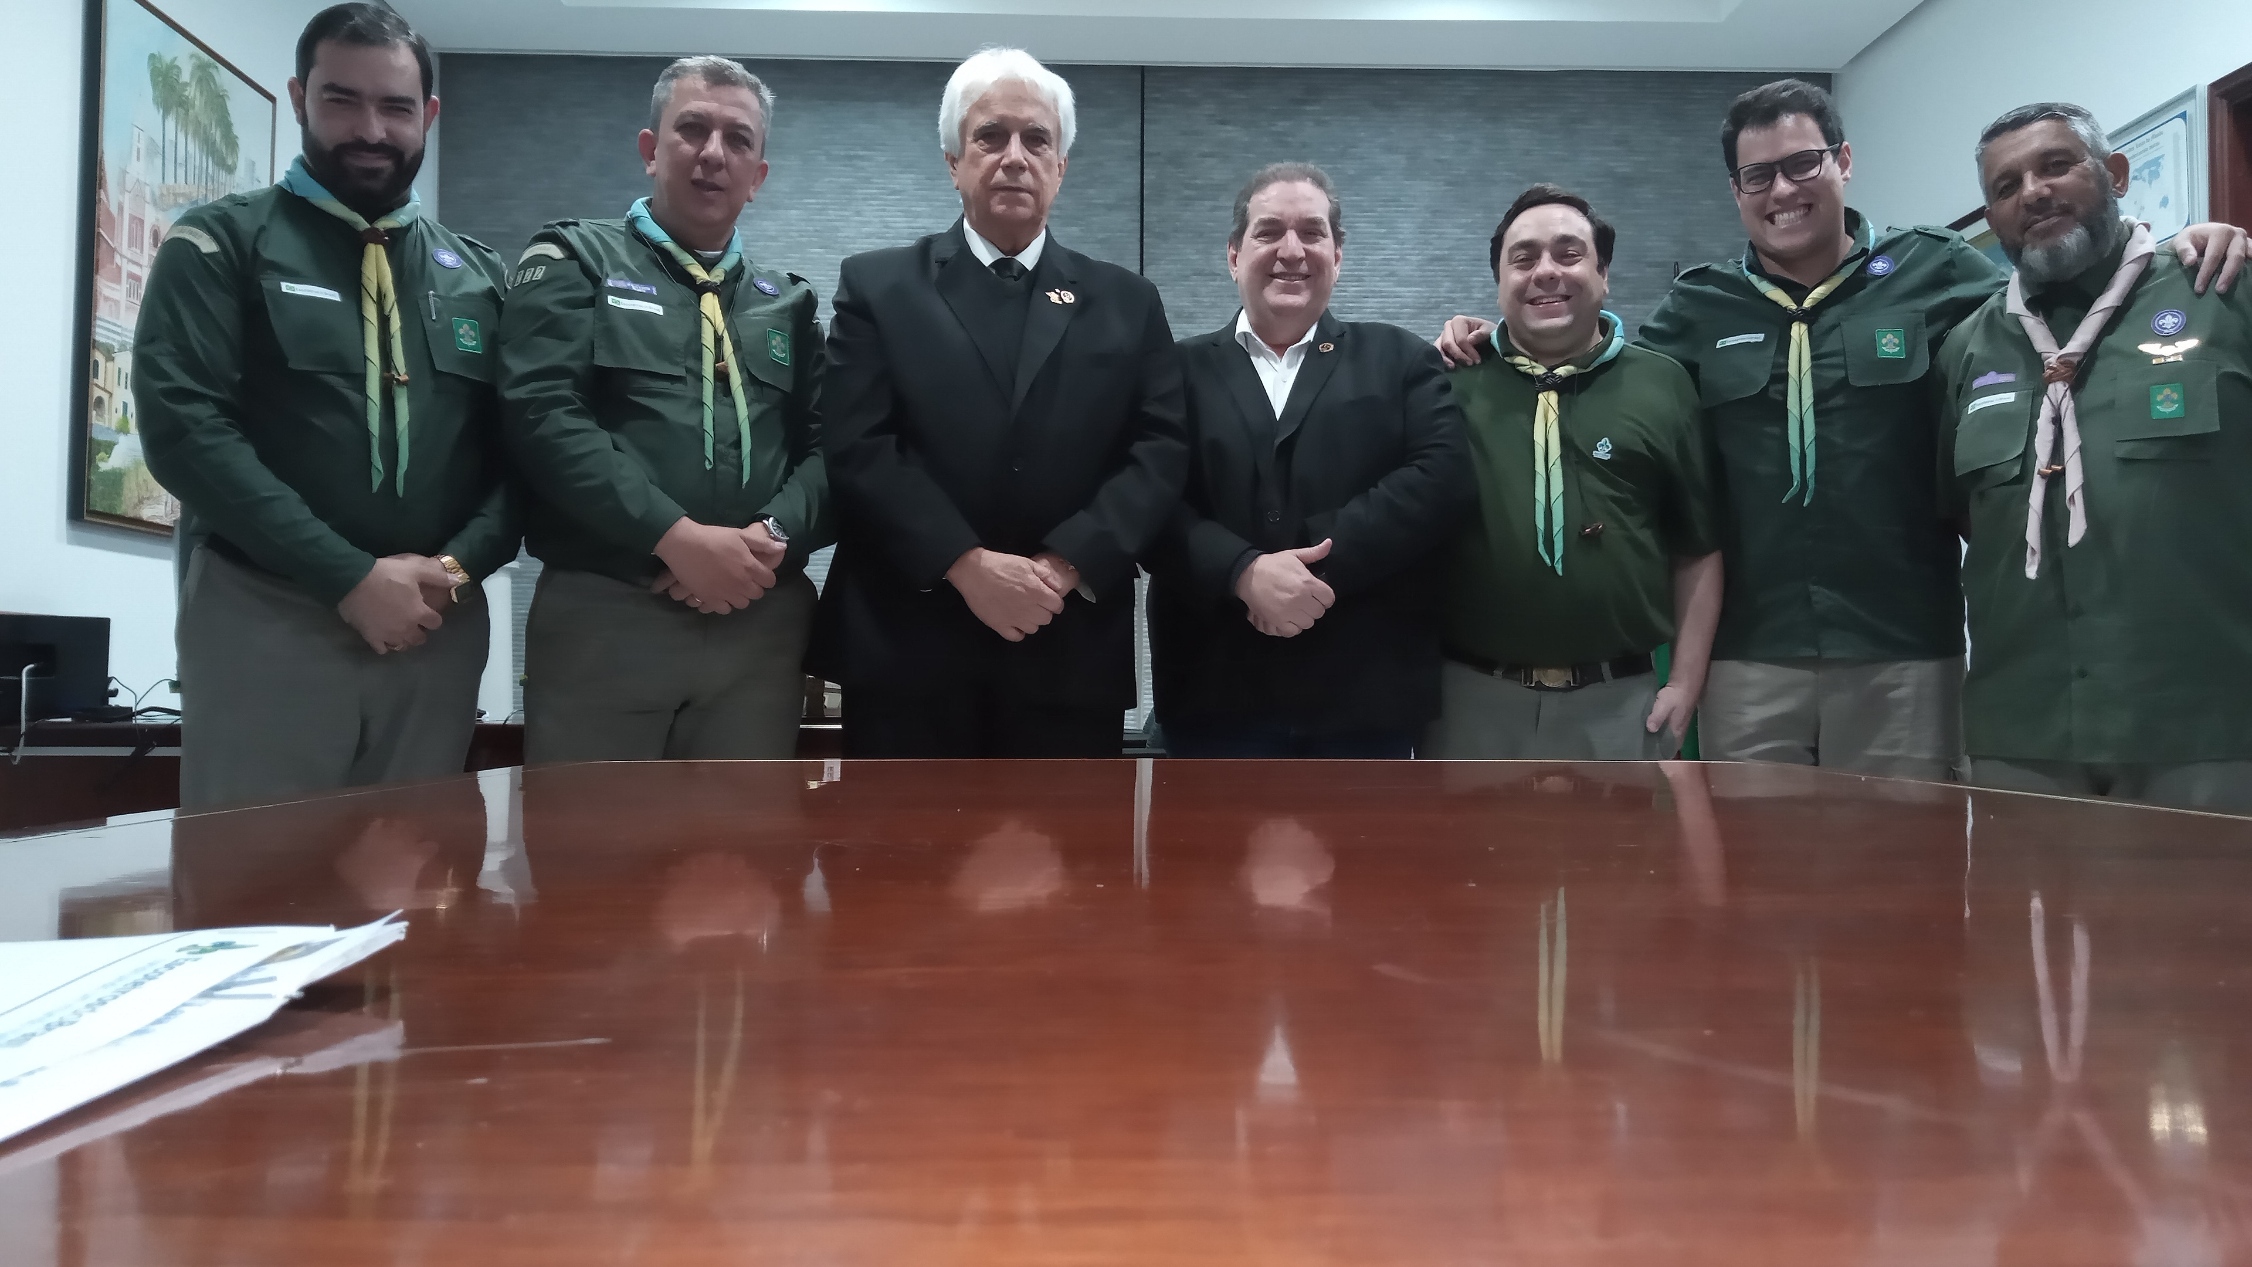 Escoteiros do Brasil-Região de São Paulo, assina Acordo de Cooperação com a Grande Loja Maçônica do Estado de São Paulo